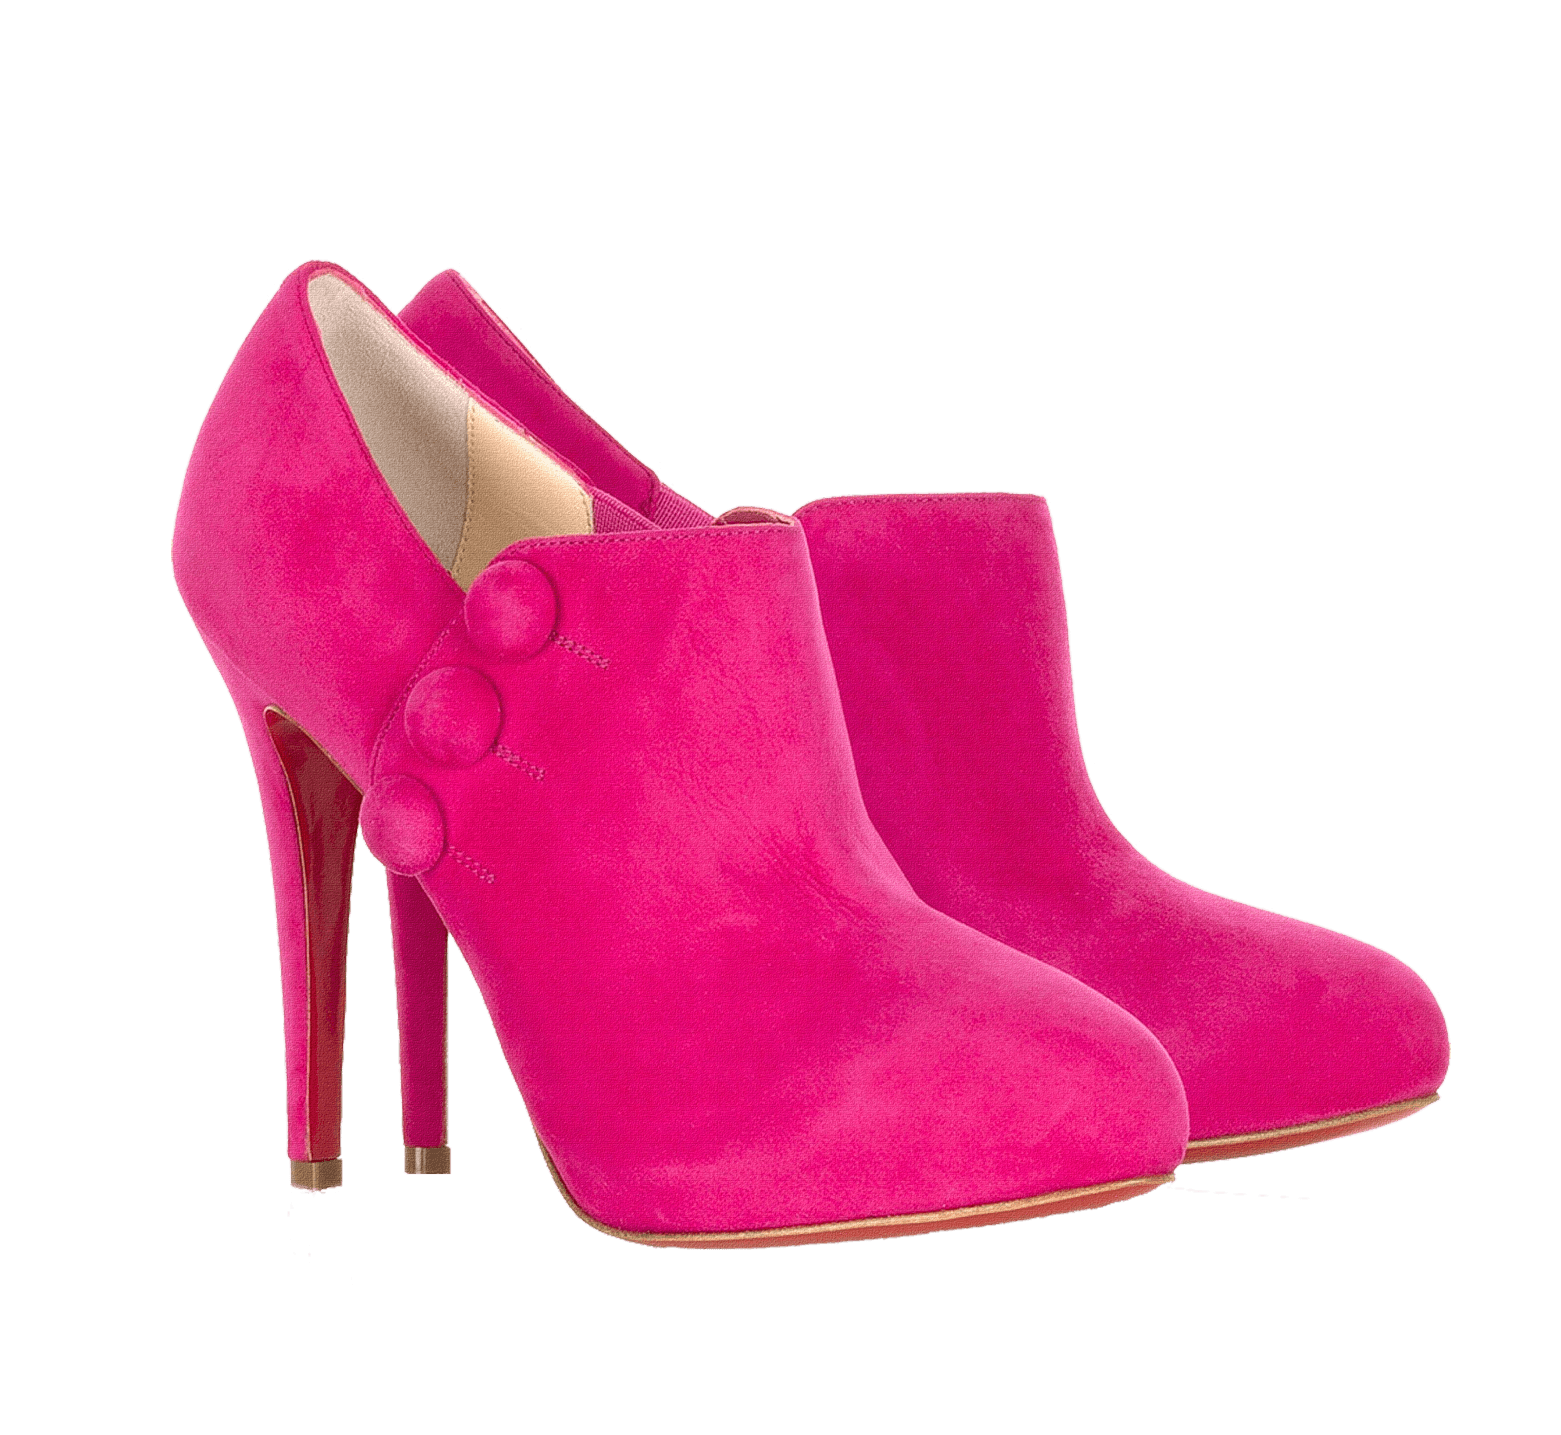 Pink Women Shoes PNG File pngteam.com